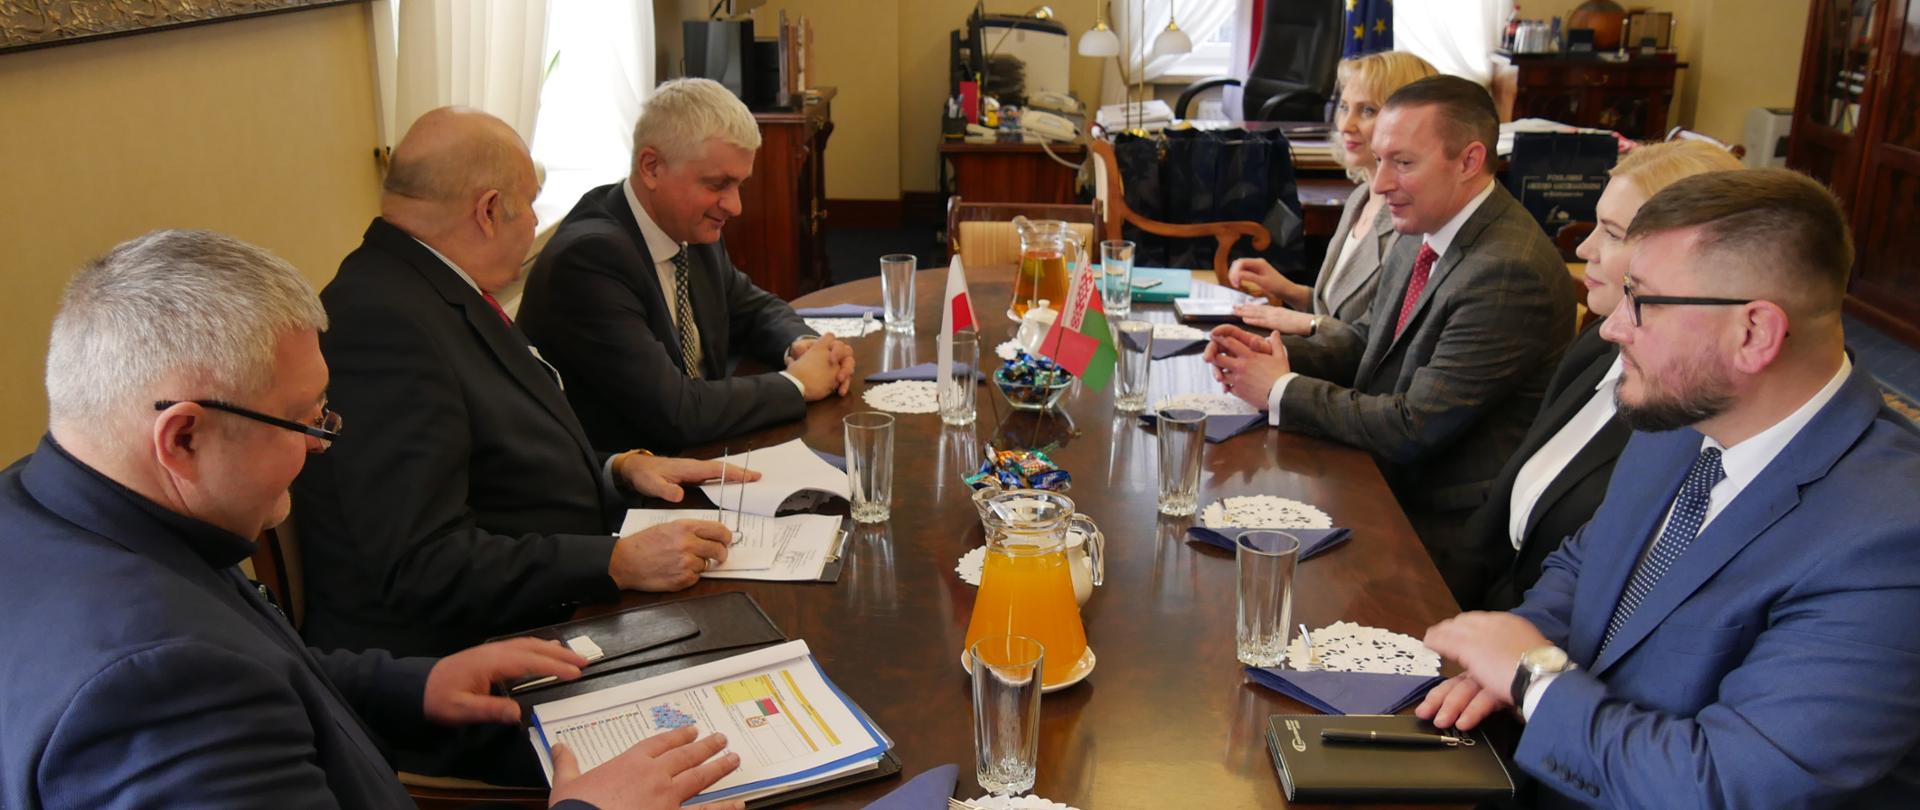 Spotkanie przedstawicieli Gomelskiego Obwodu Komitetu Wykonawczego Republiki Białoruś